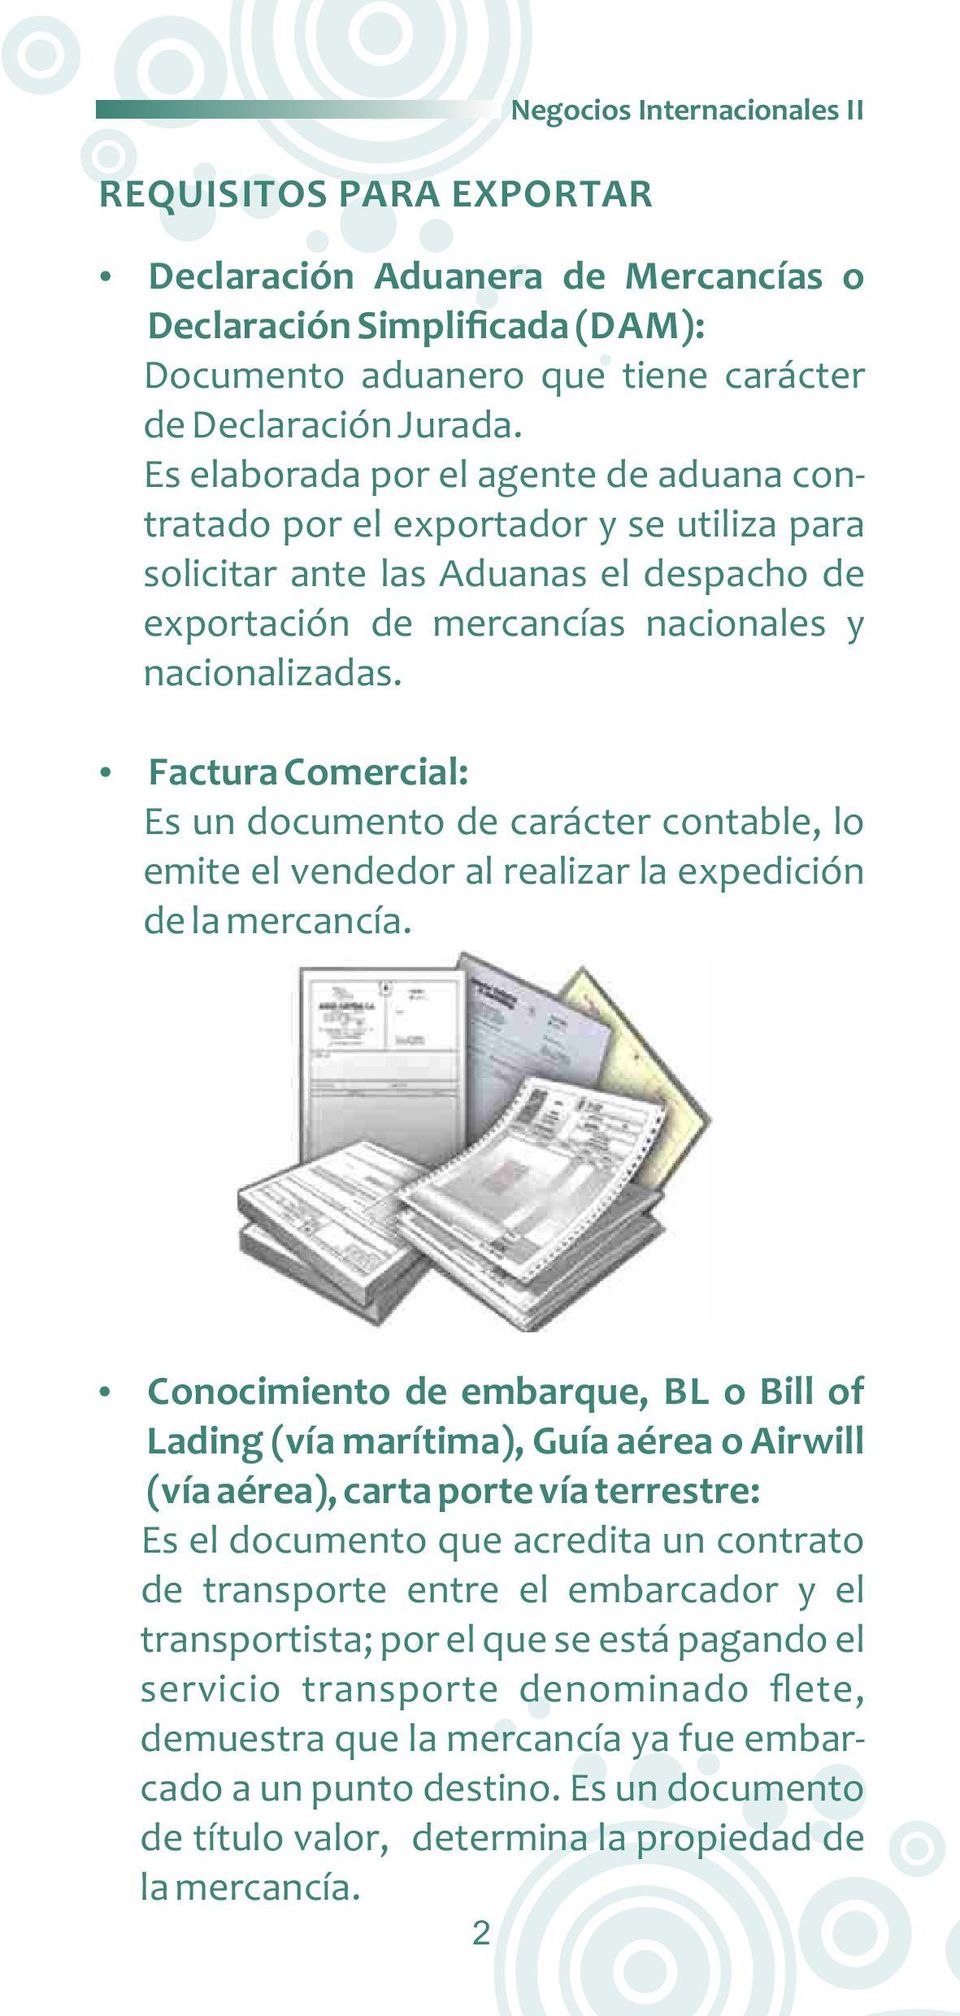 Factura Comercial: Es un documento de carácter contable, lo emite el vendedor al realizar la expedición de la mercancía.